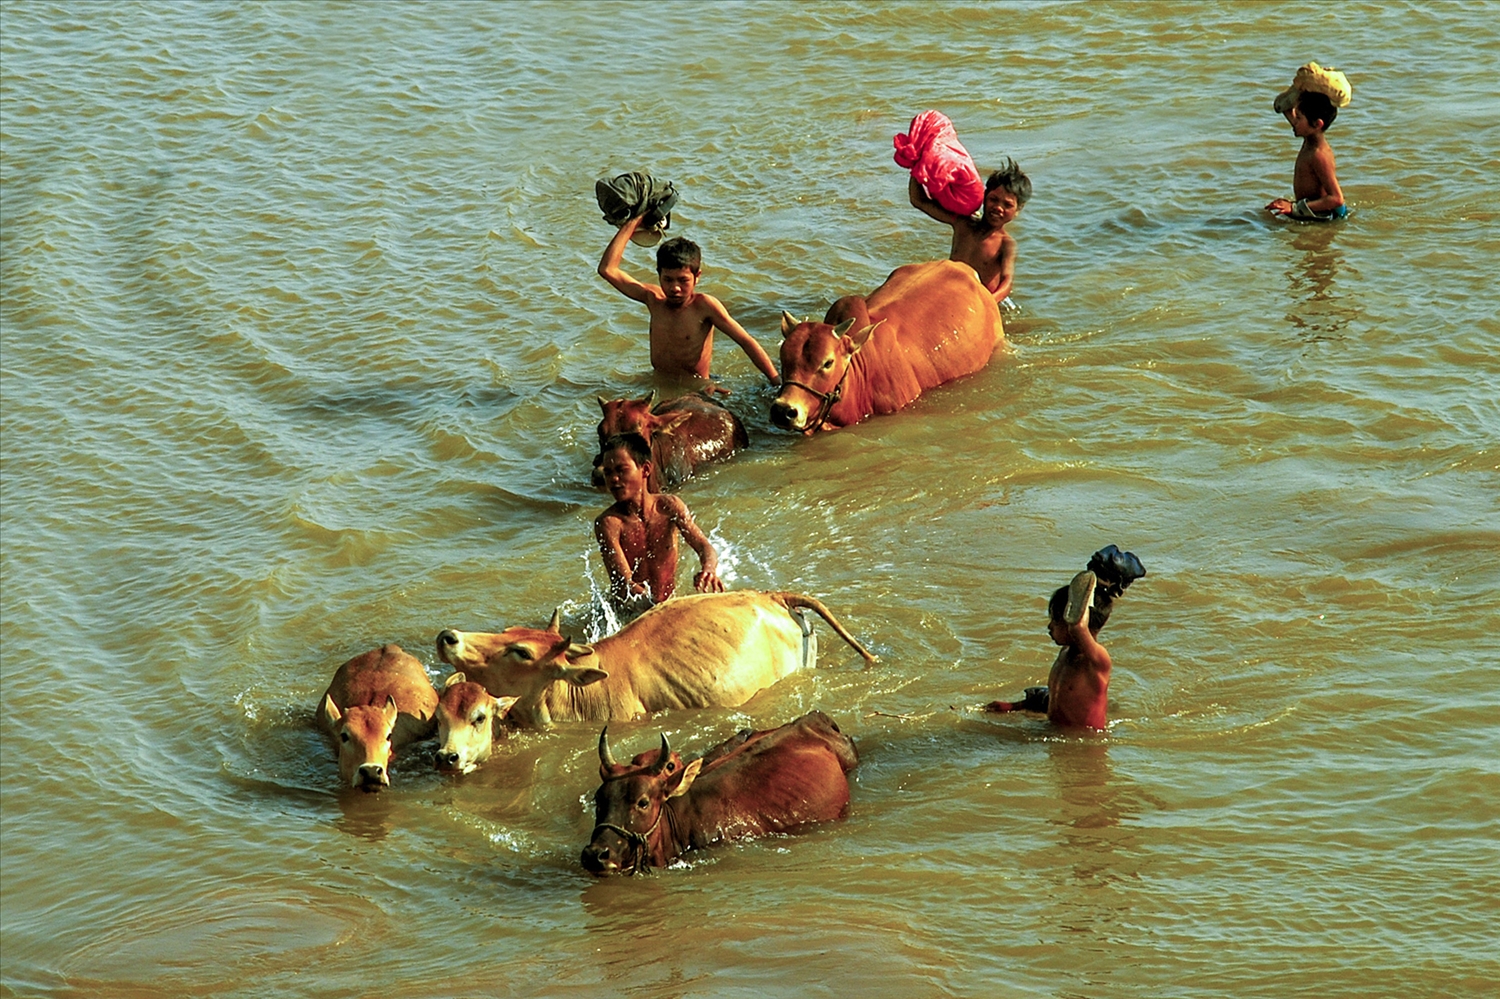 Cứ chiều về, lũ trẻ lại thoả thích bơi lội với những chú bò qua sông.